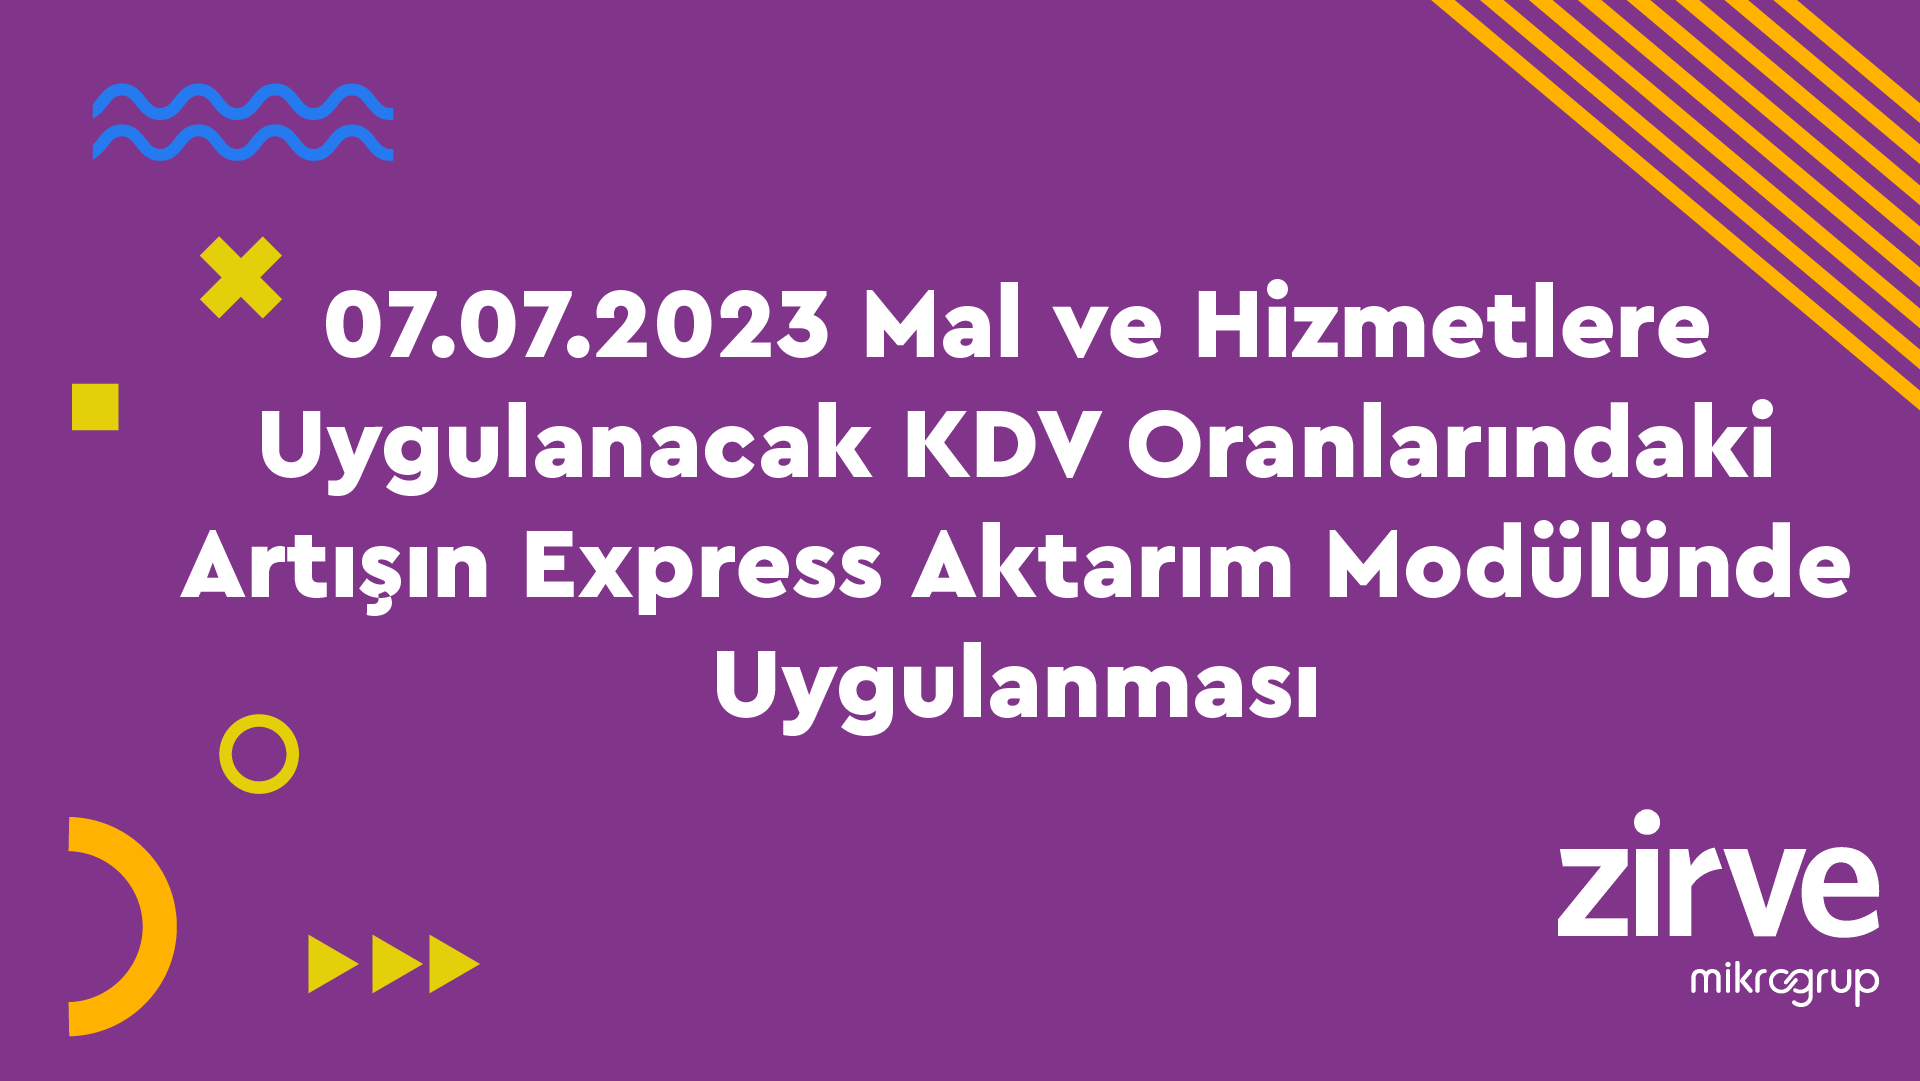 07.07.2023 Mal ve Hizmetlere Uygulanacak KDV Oranlarındaki Artışın Express Aktarım Modülünde Uygulanması